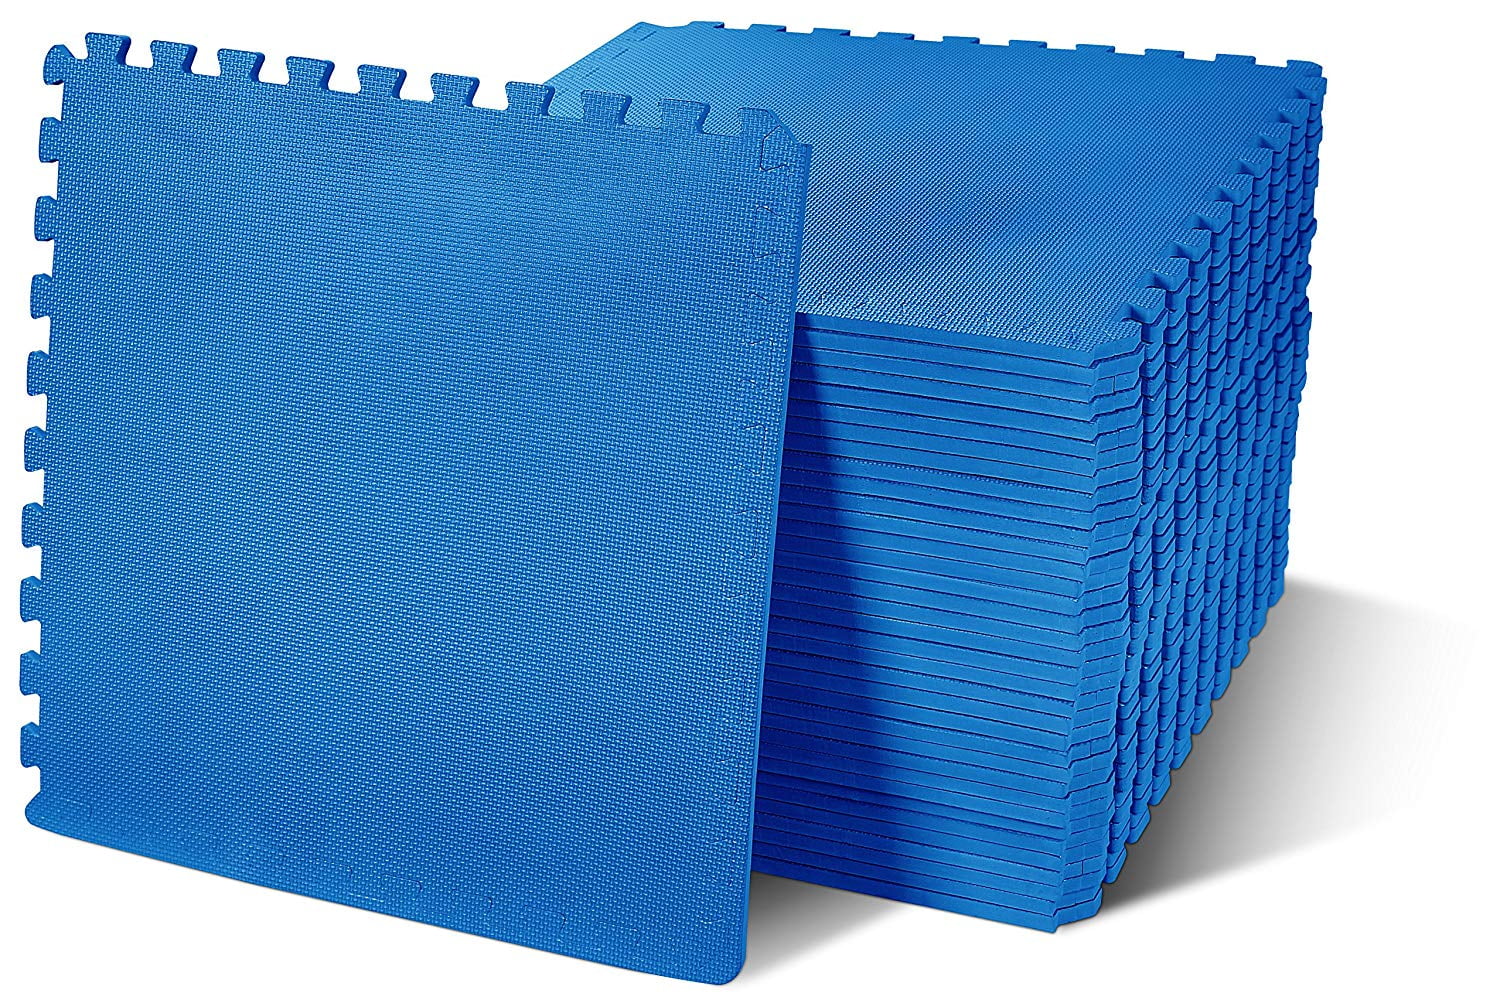 Folding Mechanics Mat | 1.25 Thick EVA Foam | 22 x 55 inches